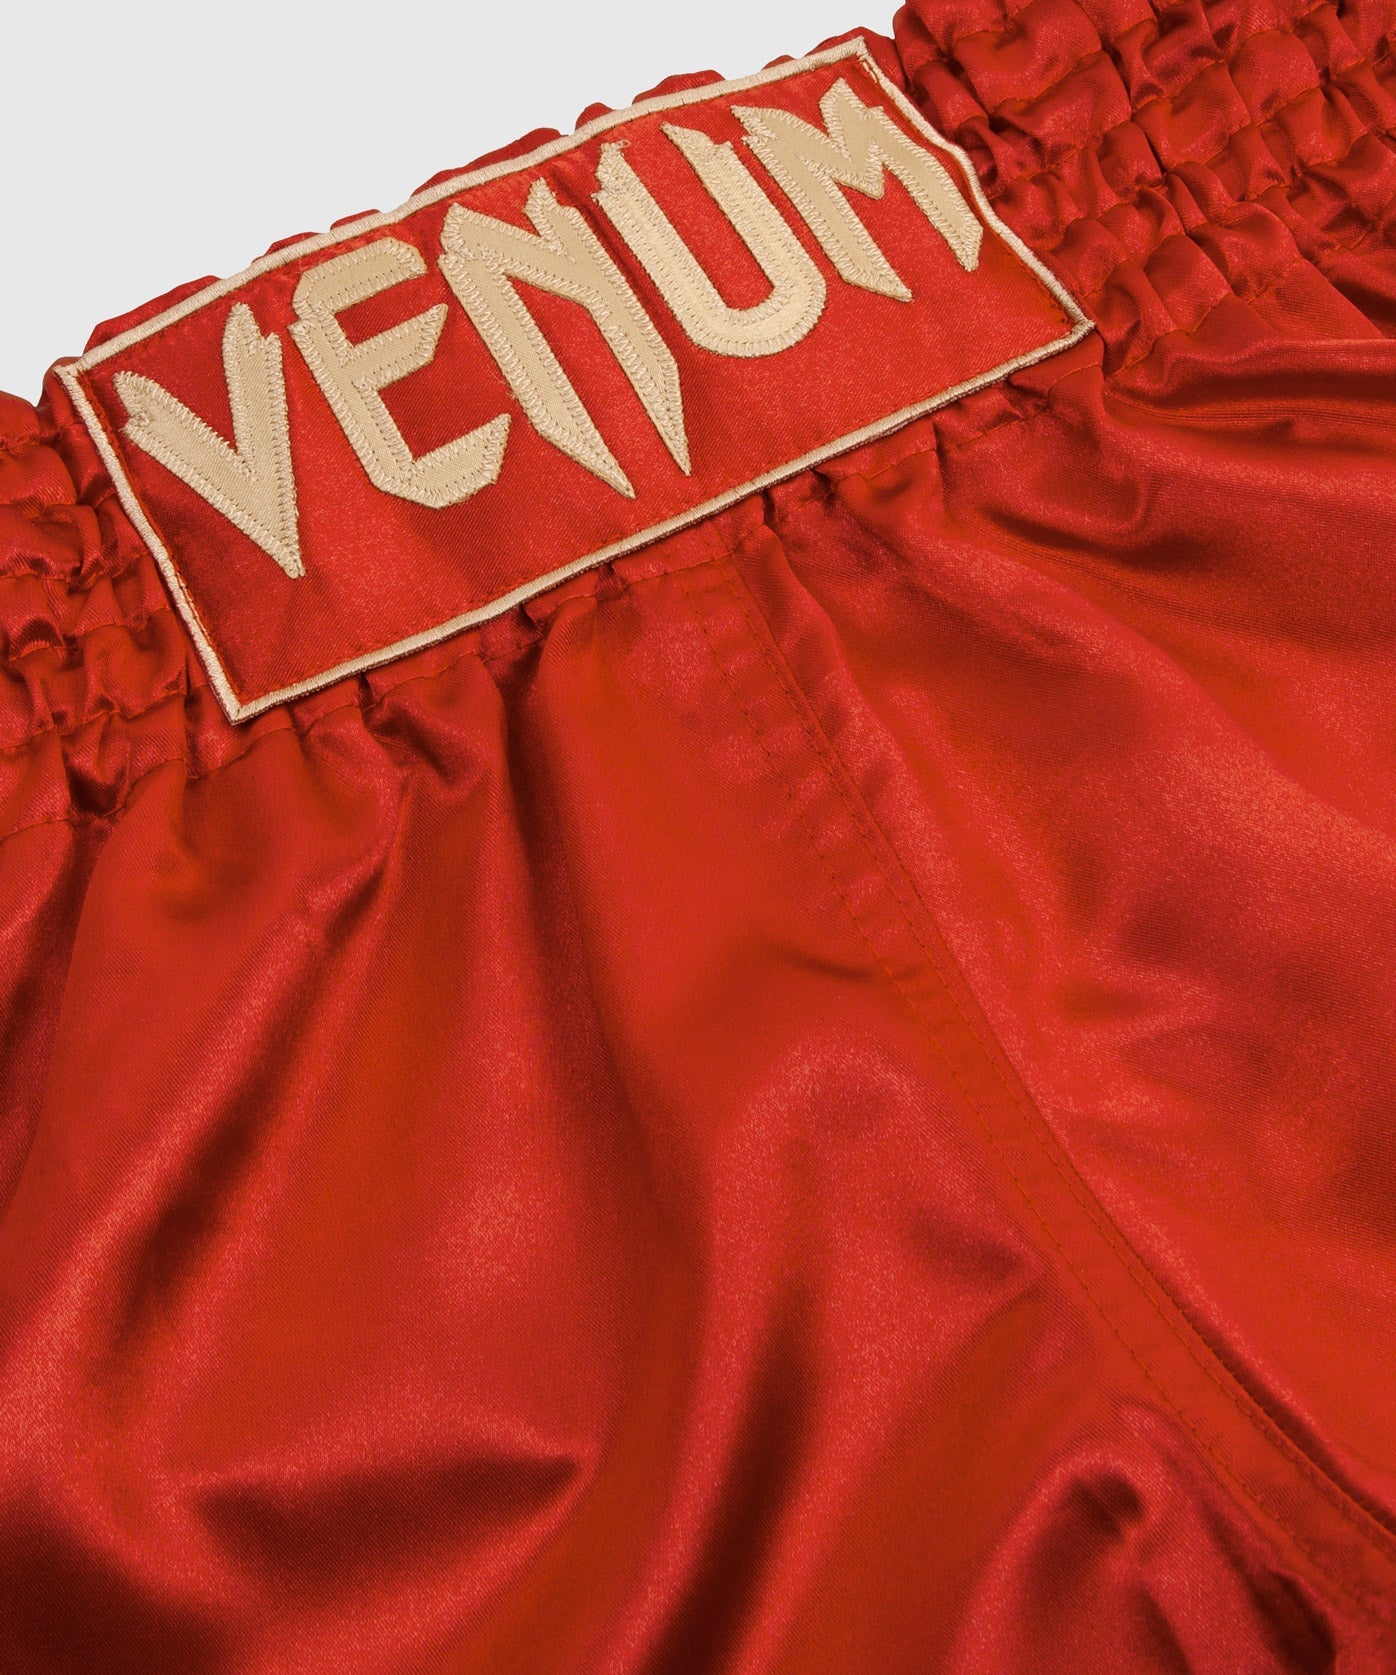 Venum Muay Thai Shorts Classic - Bordeaux/Gold